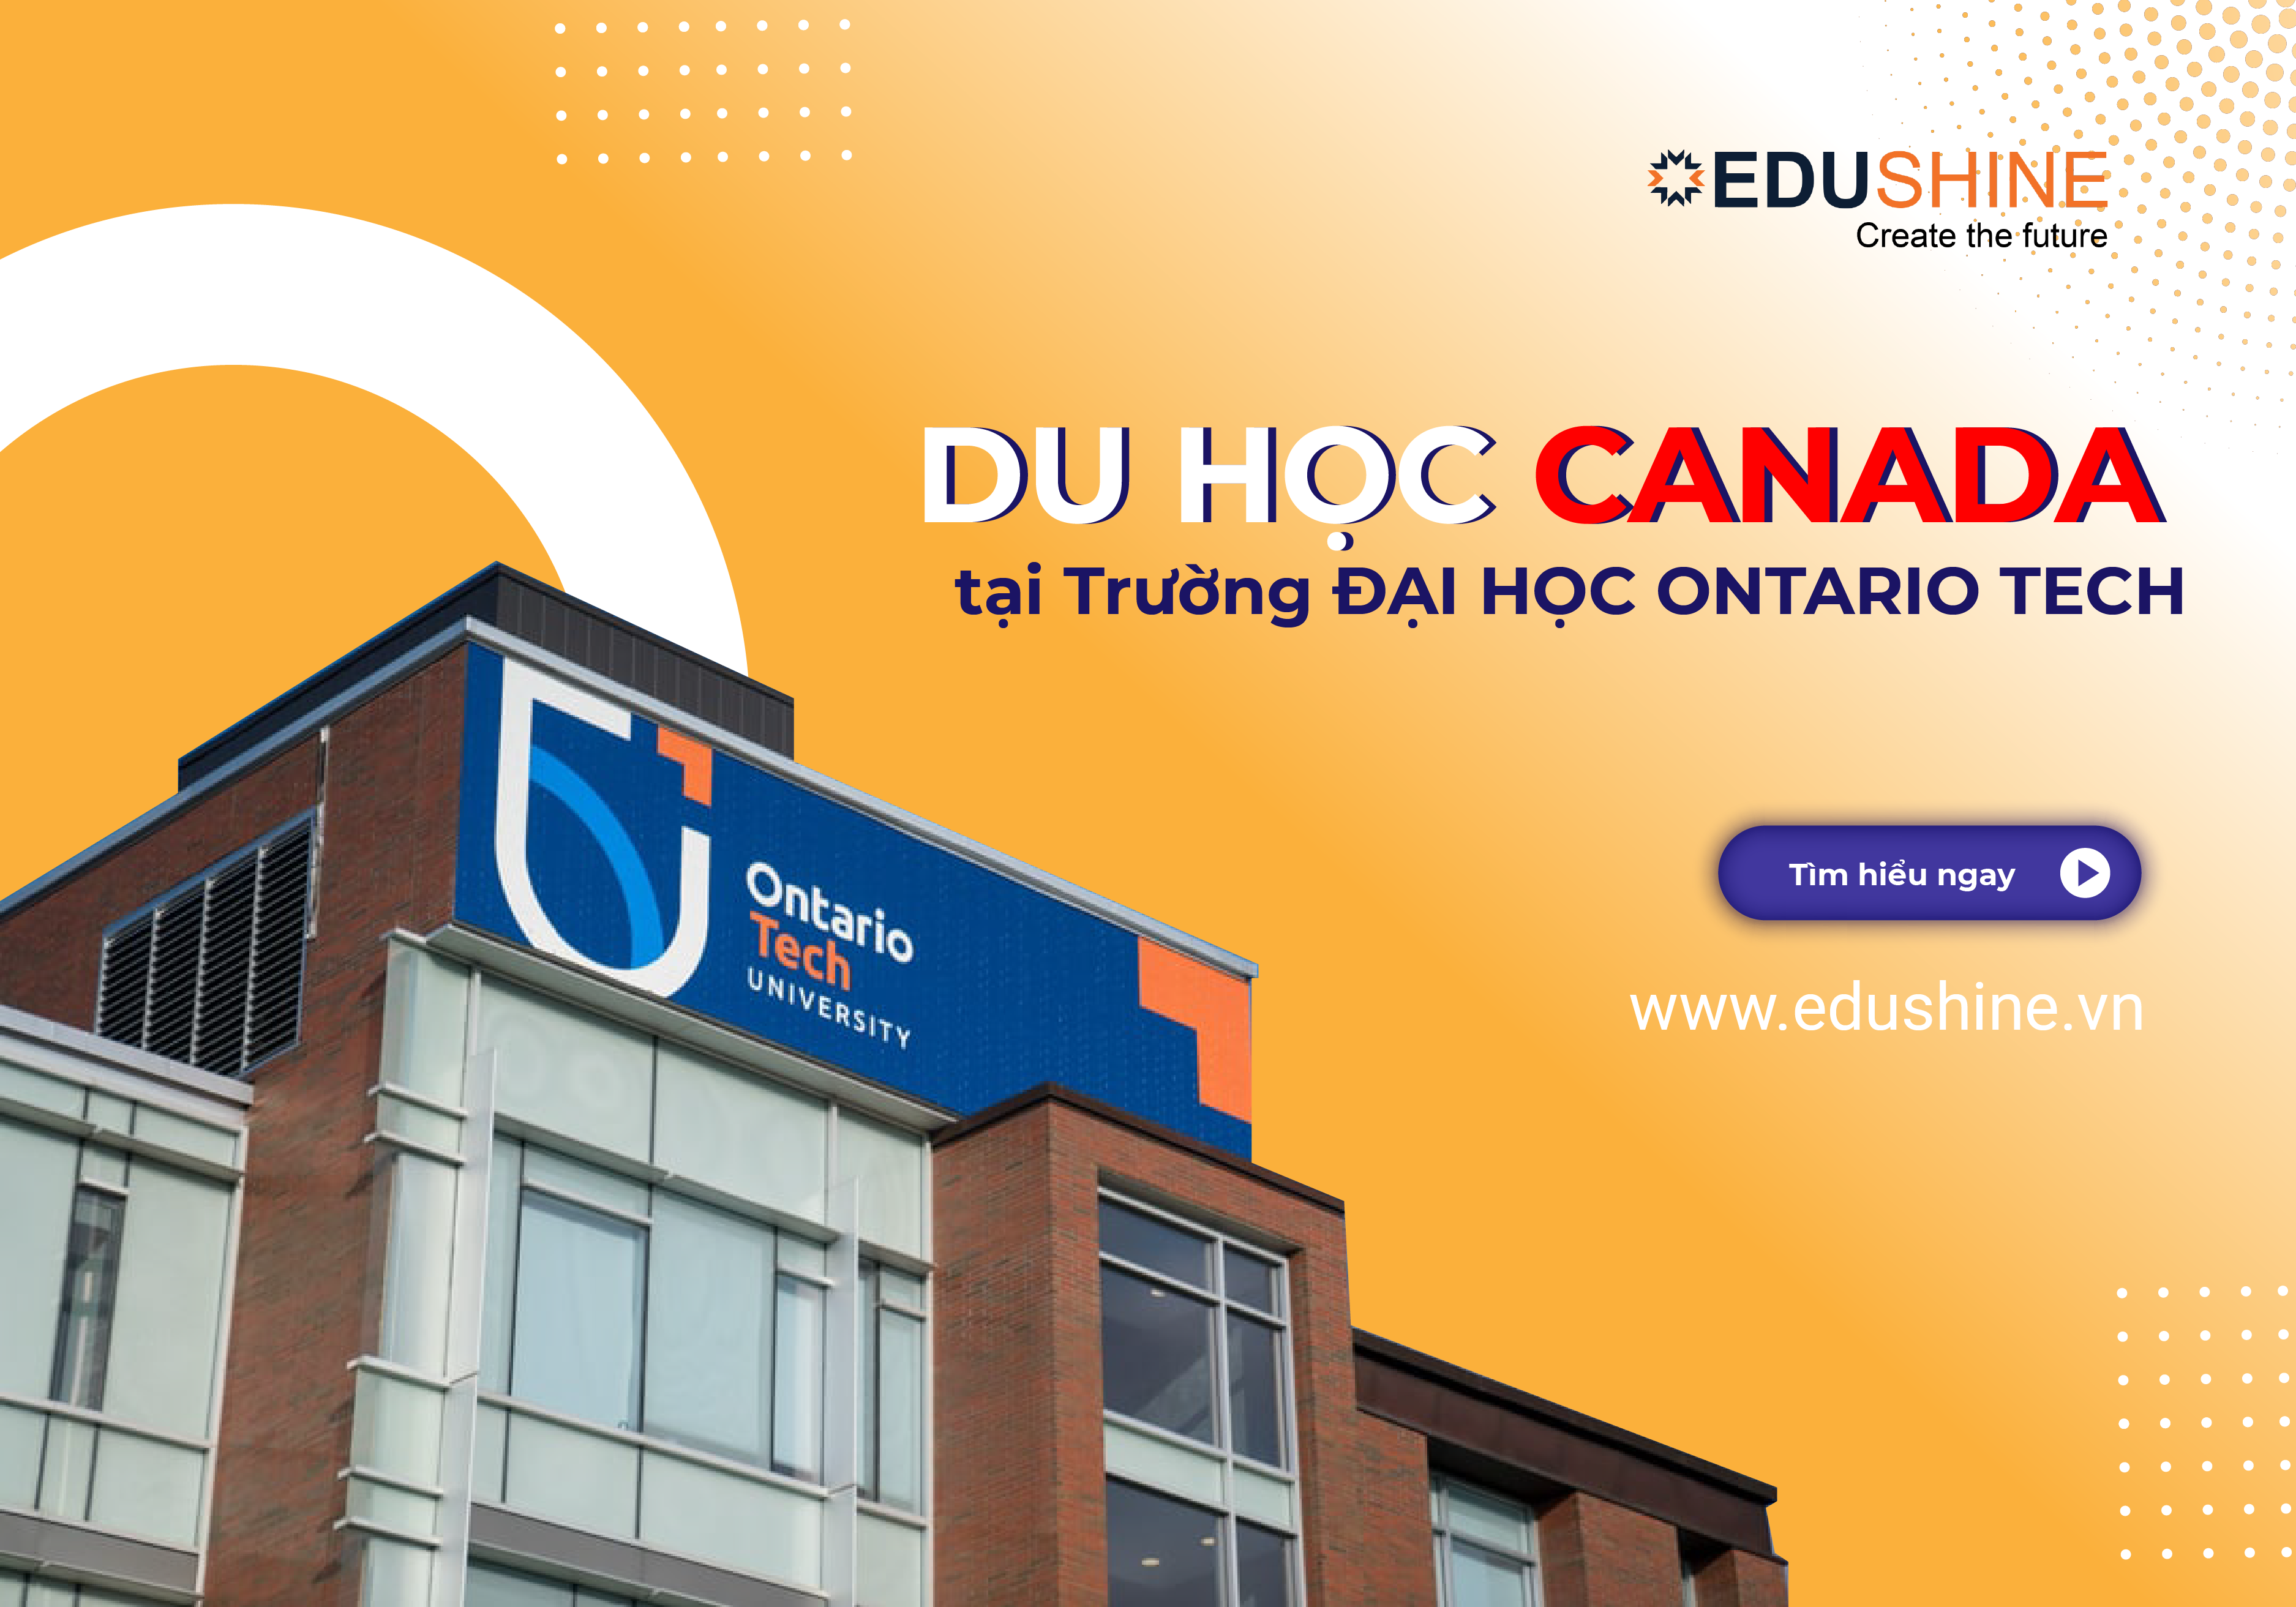 Đại học Ontario Tech - Top 8 trường đại học hàng đầu tại Canada